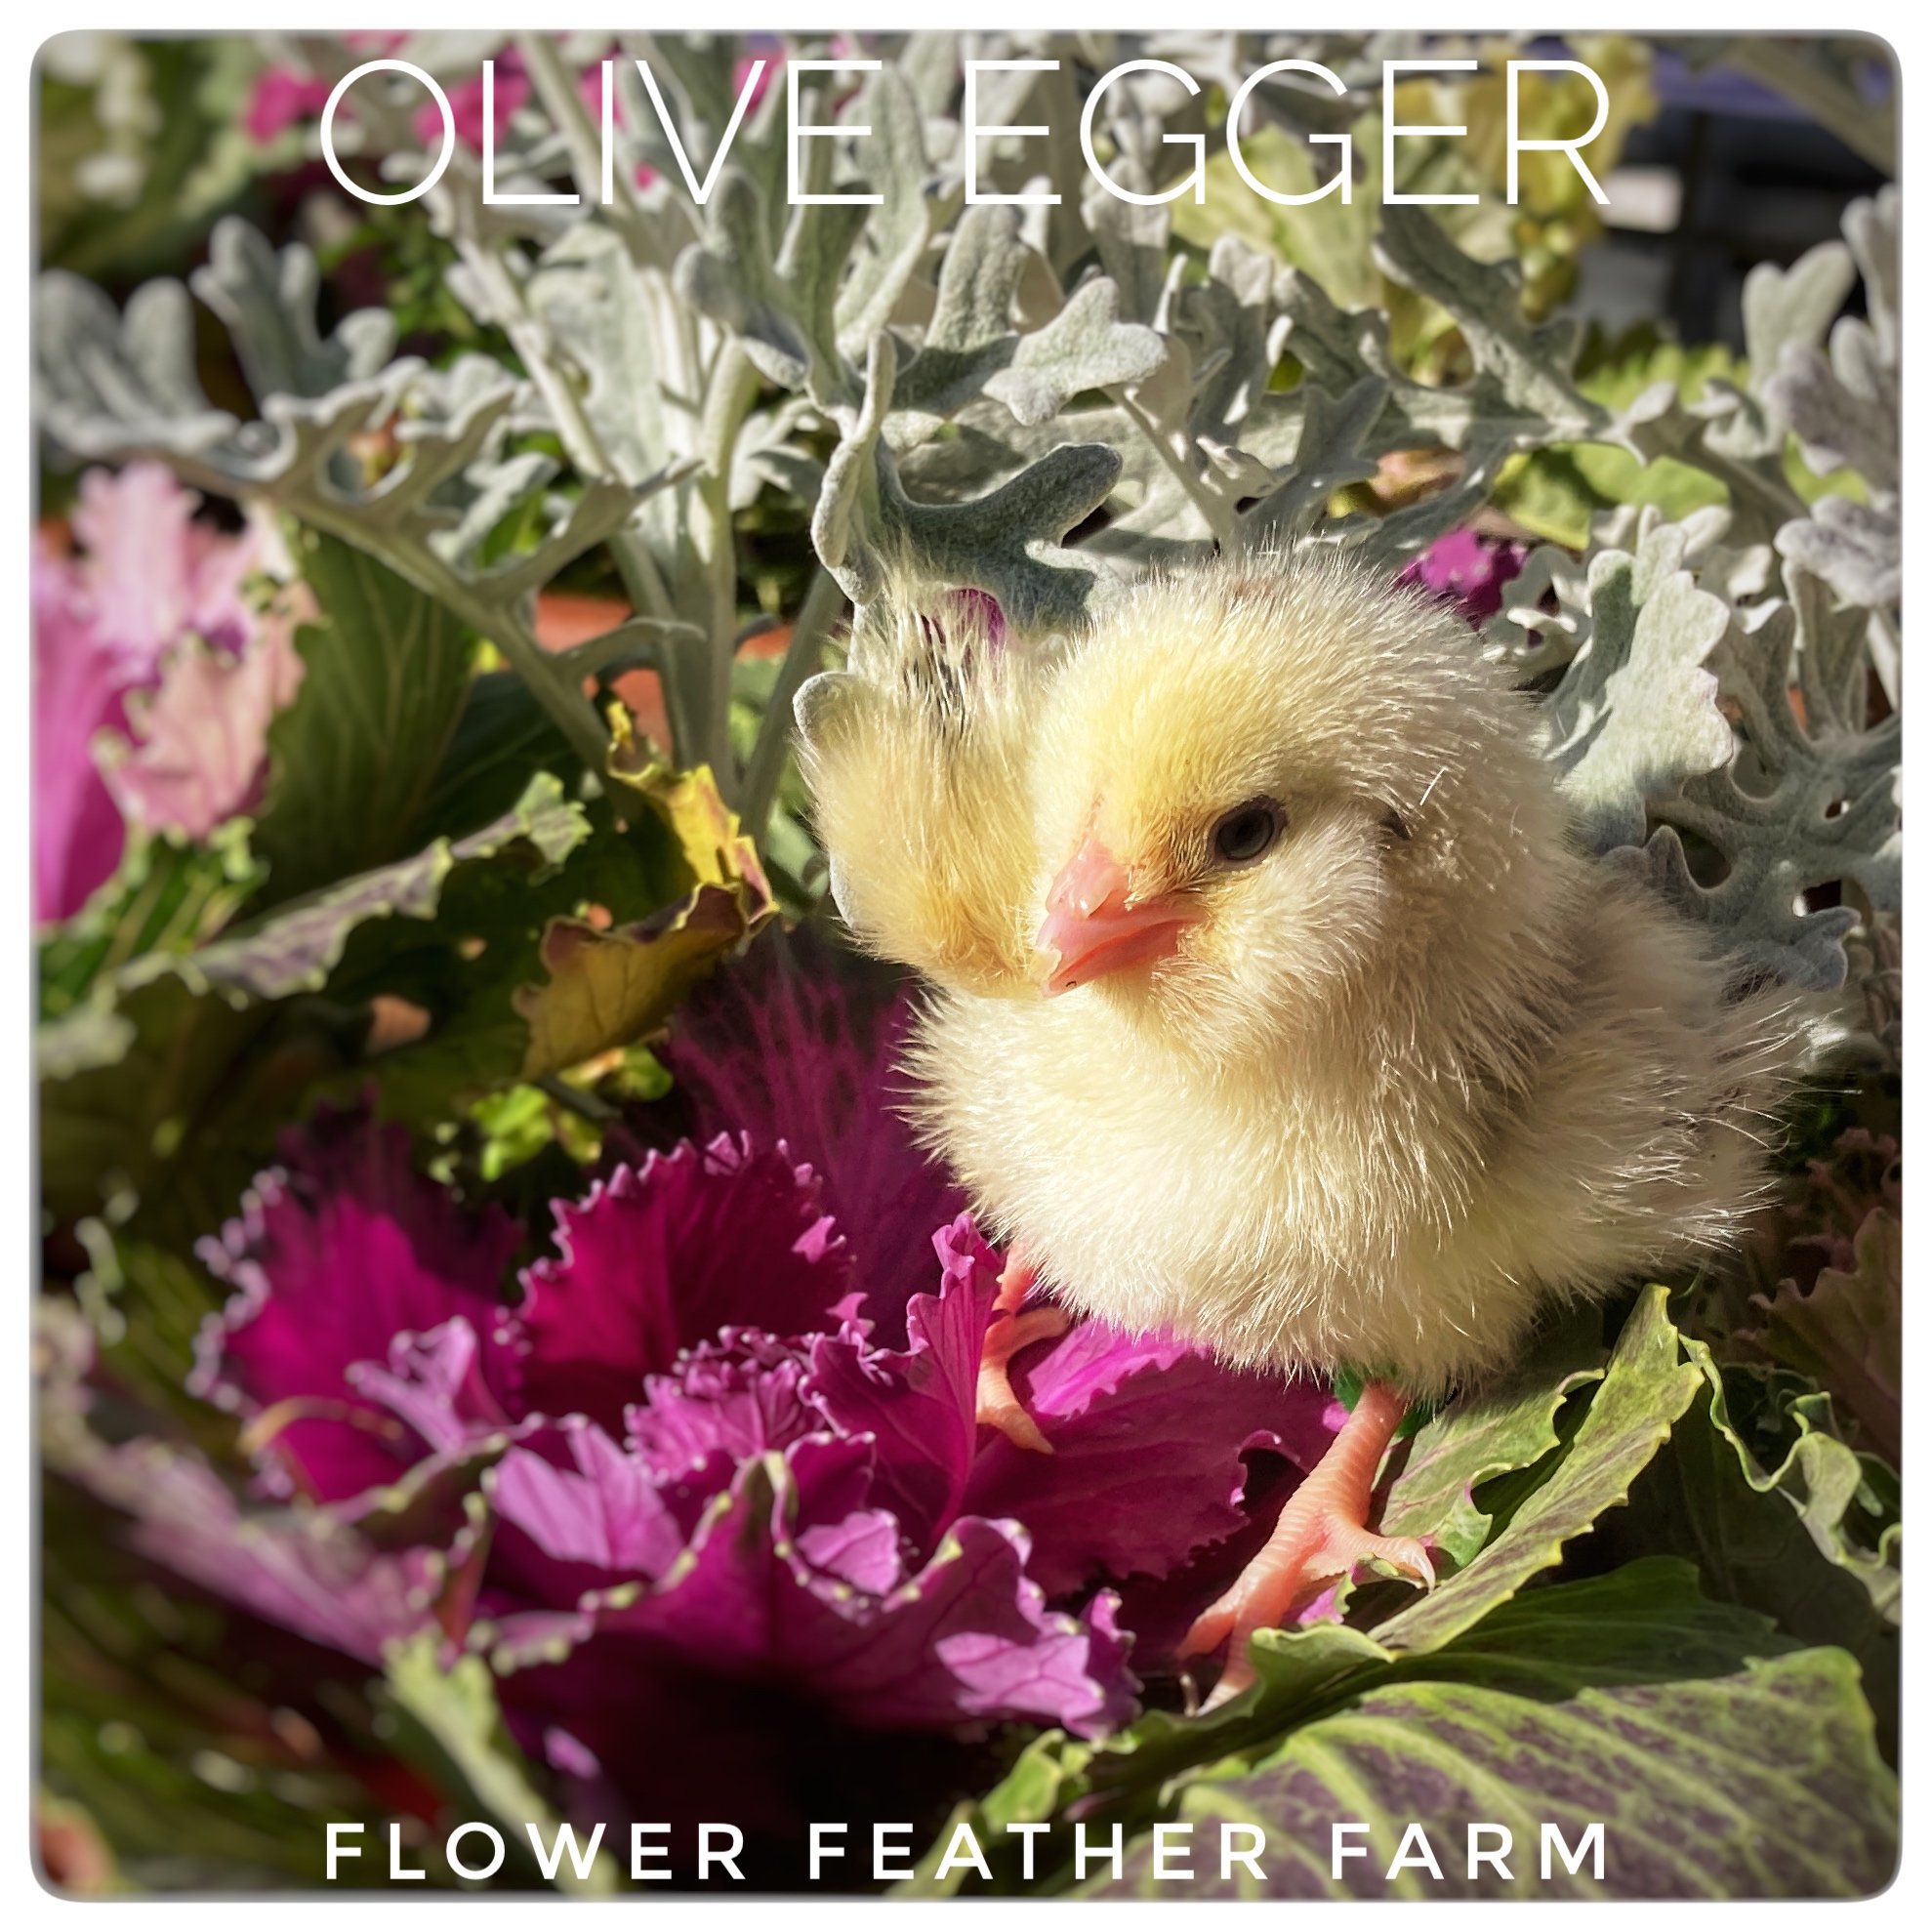 Olive Egger Chick